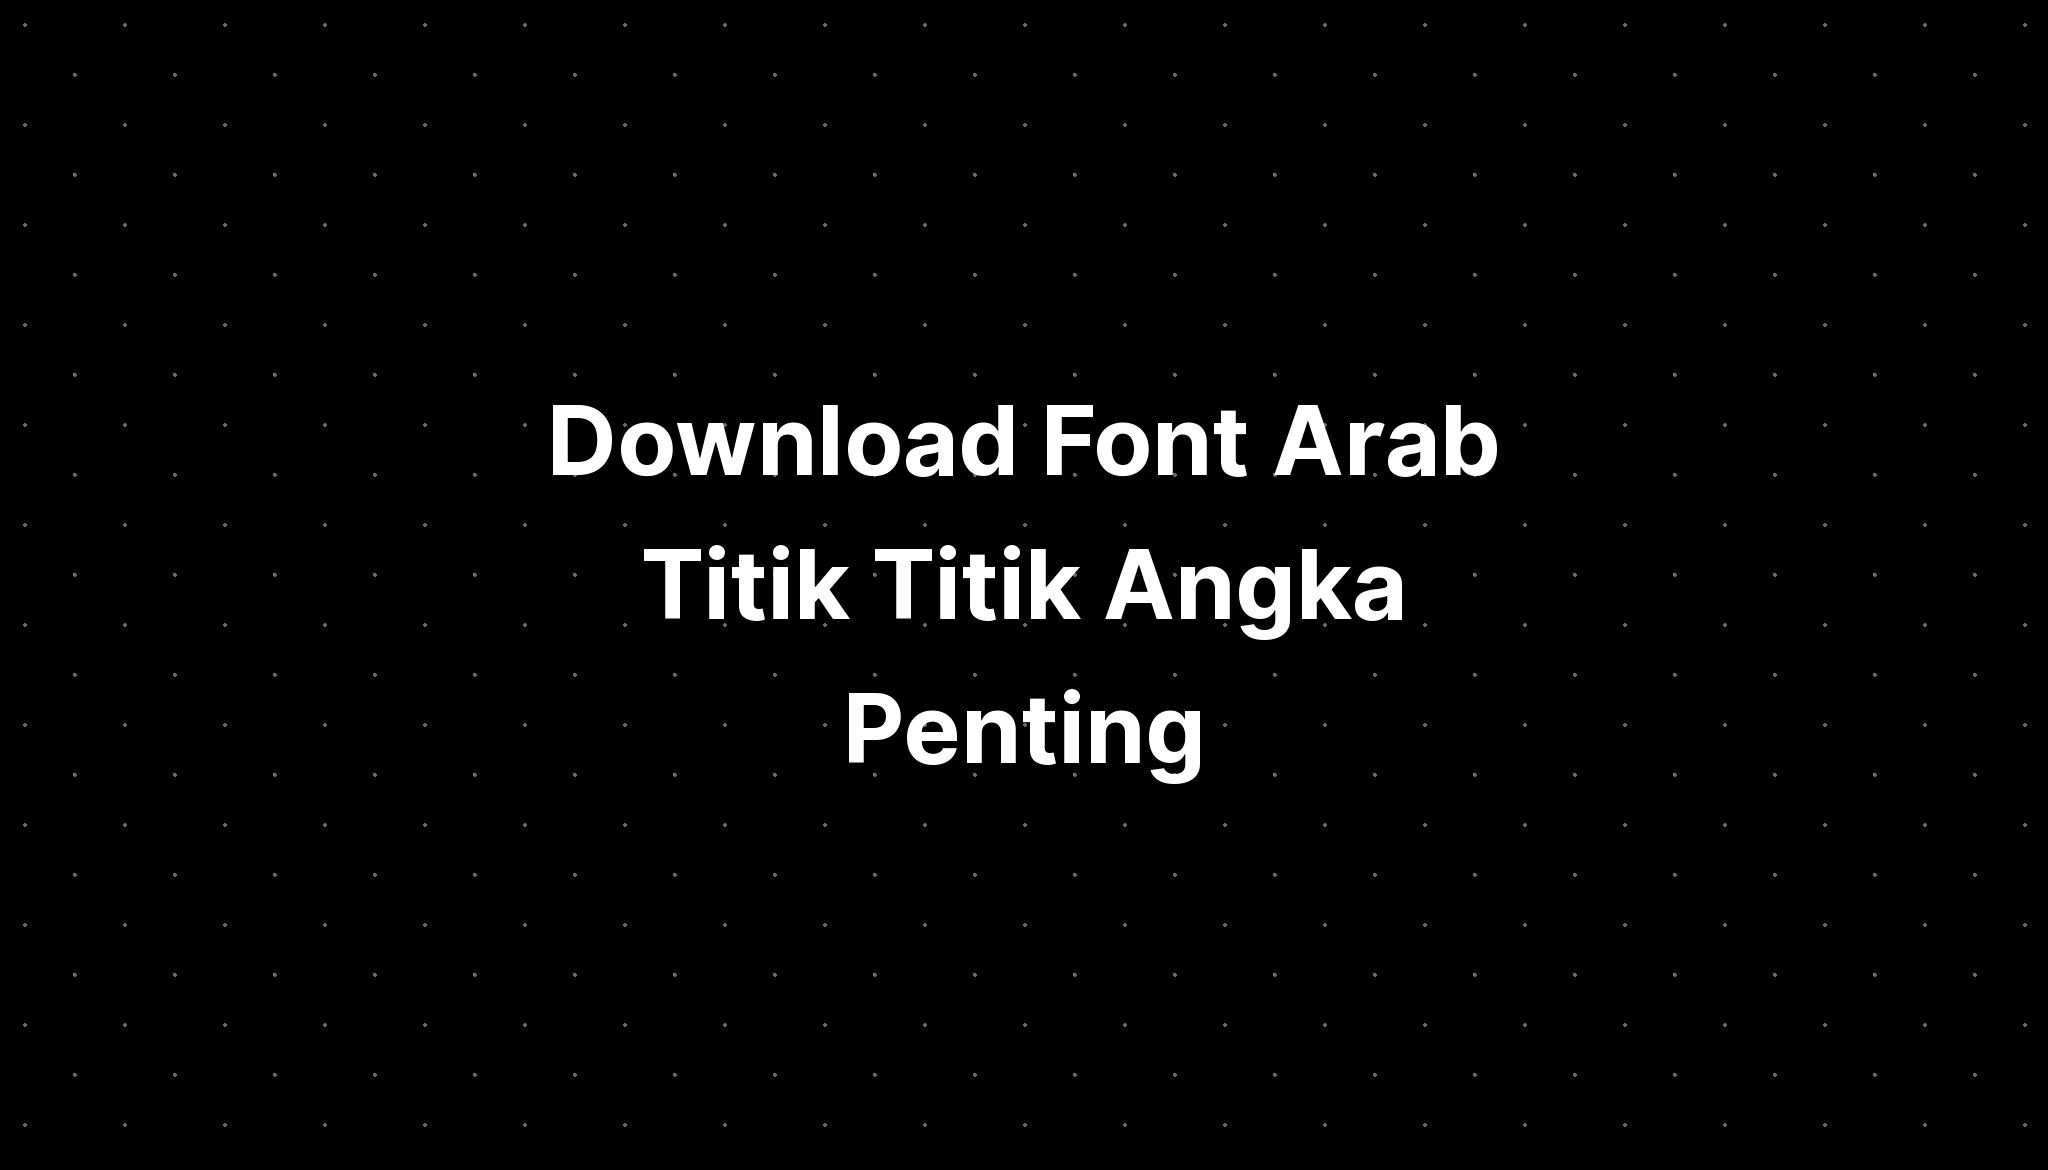 Download Font Arab Titik Titik Angka Penting Desimal - IMAGESEE